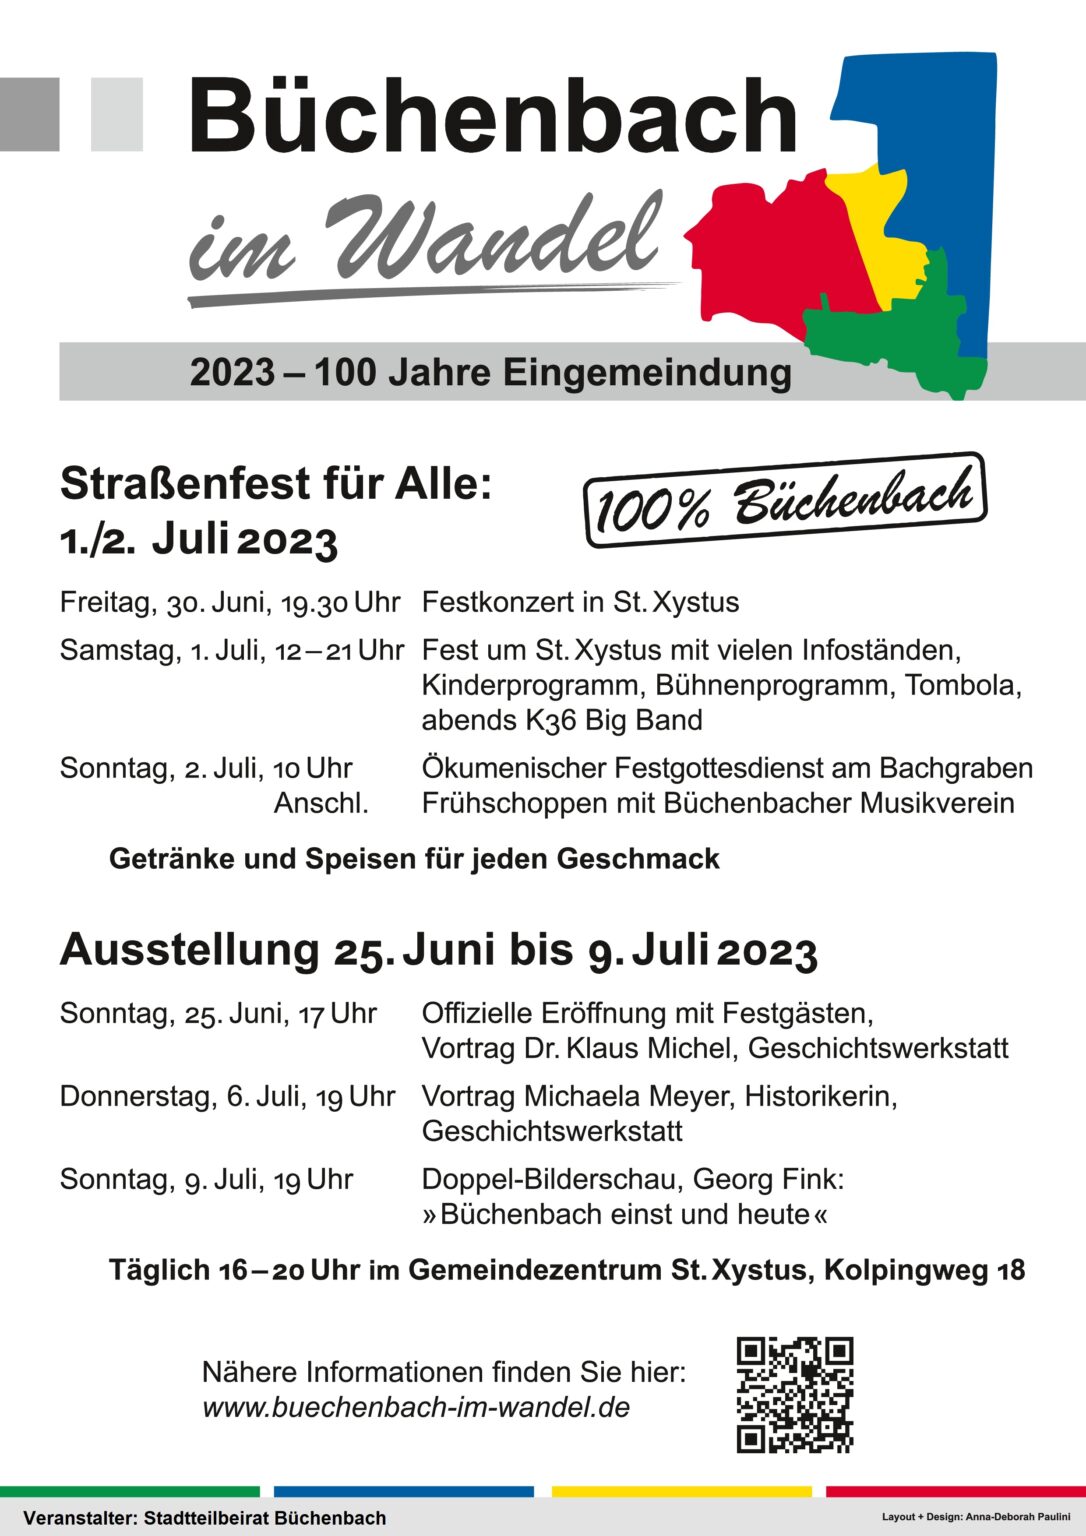 Einladung Büchenbach im Wandel Straßenfest für alle am 1.-2. Juli 2023